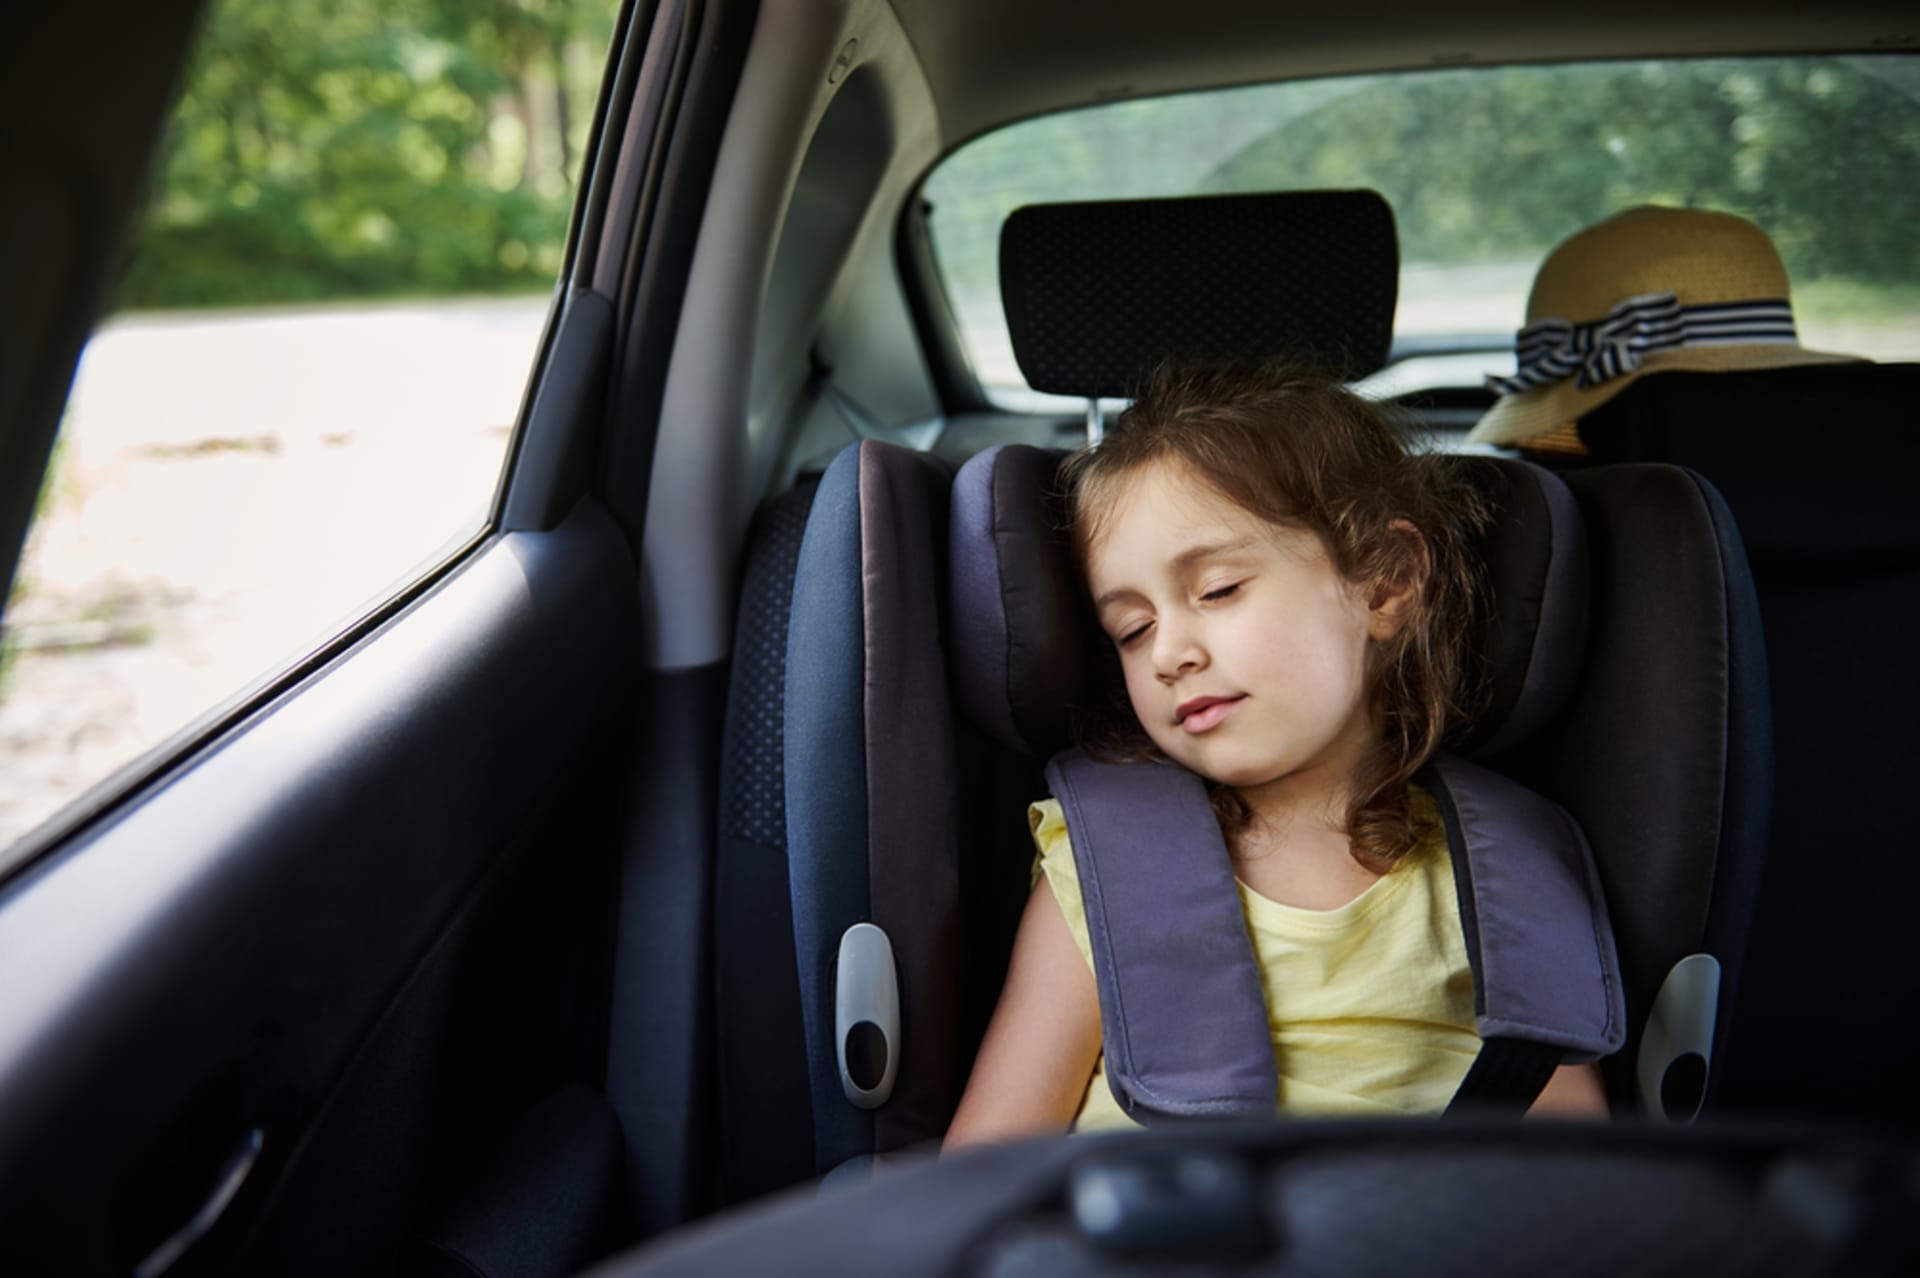 Děti připoutané v sedačce často nevědí, jak se odpoutat, jak otevřít okno nebo přivolat pomoc.